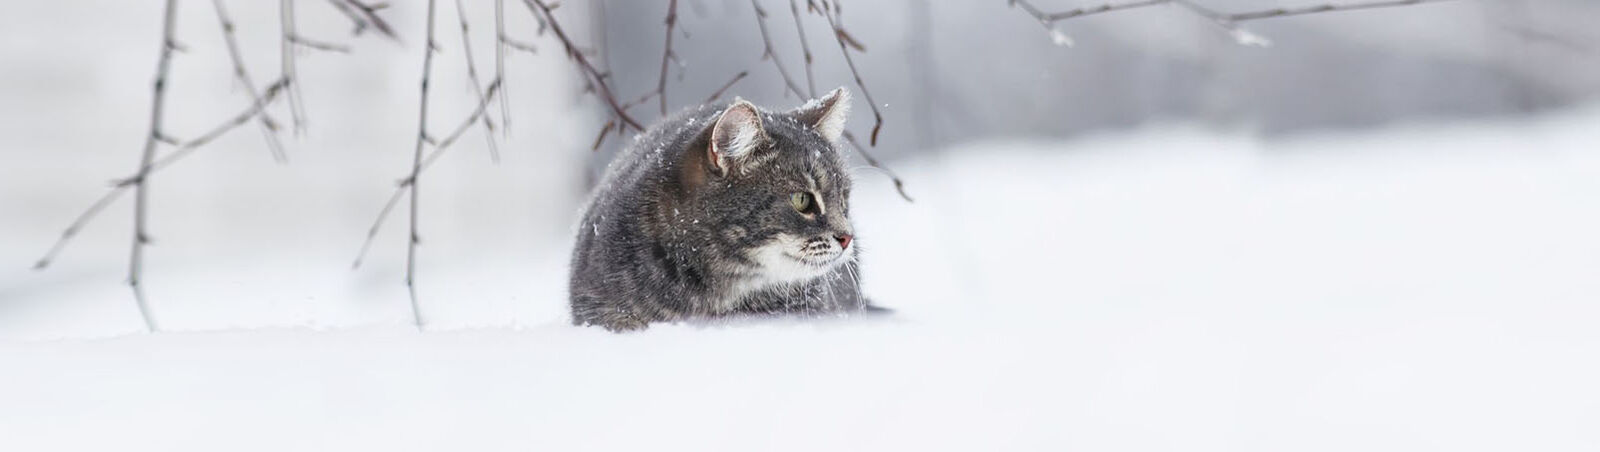 Eine Katze unter einem Zweig im Schnee.